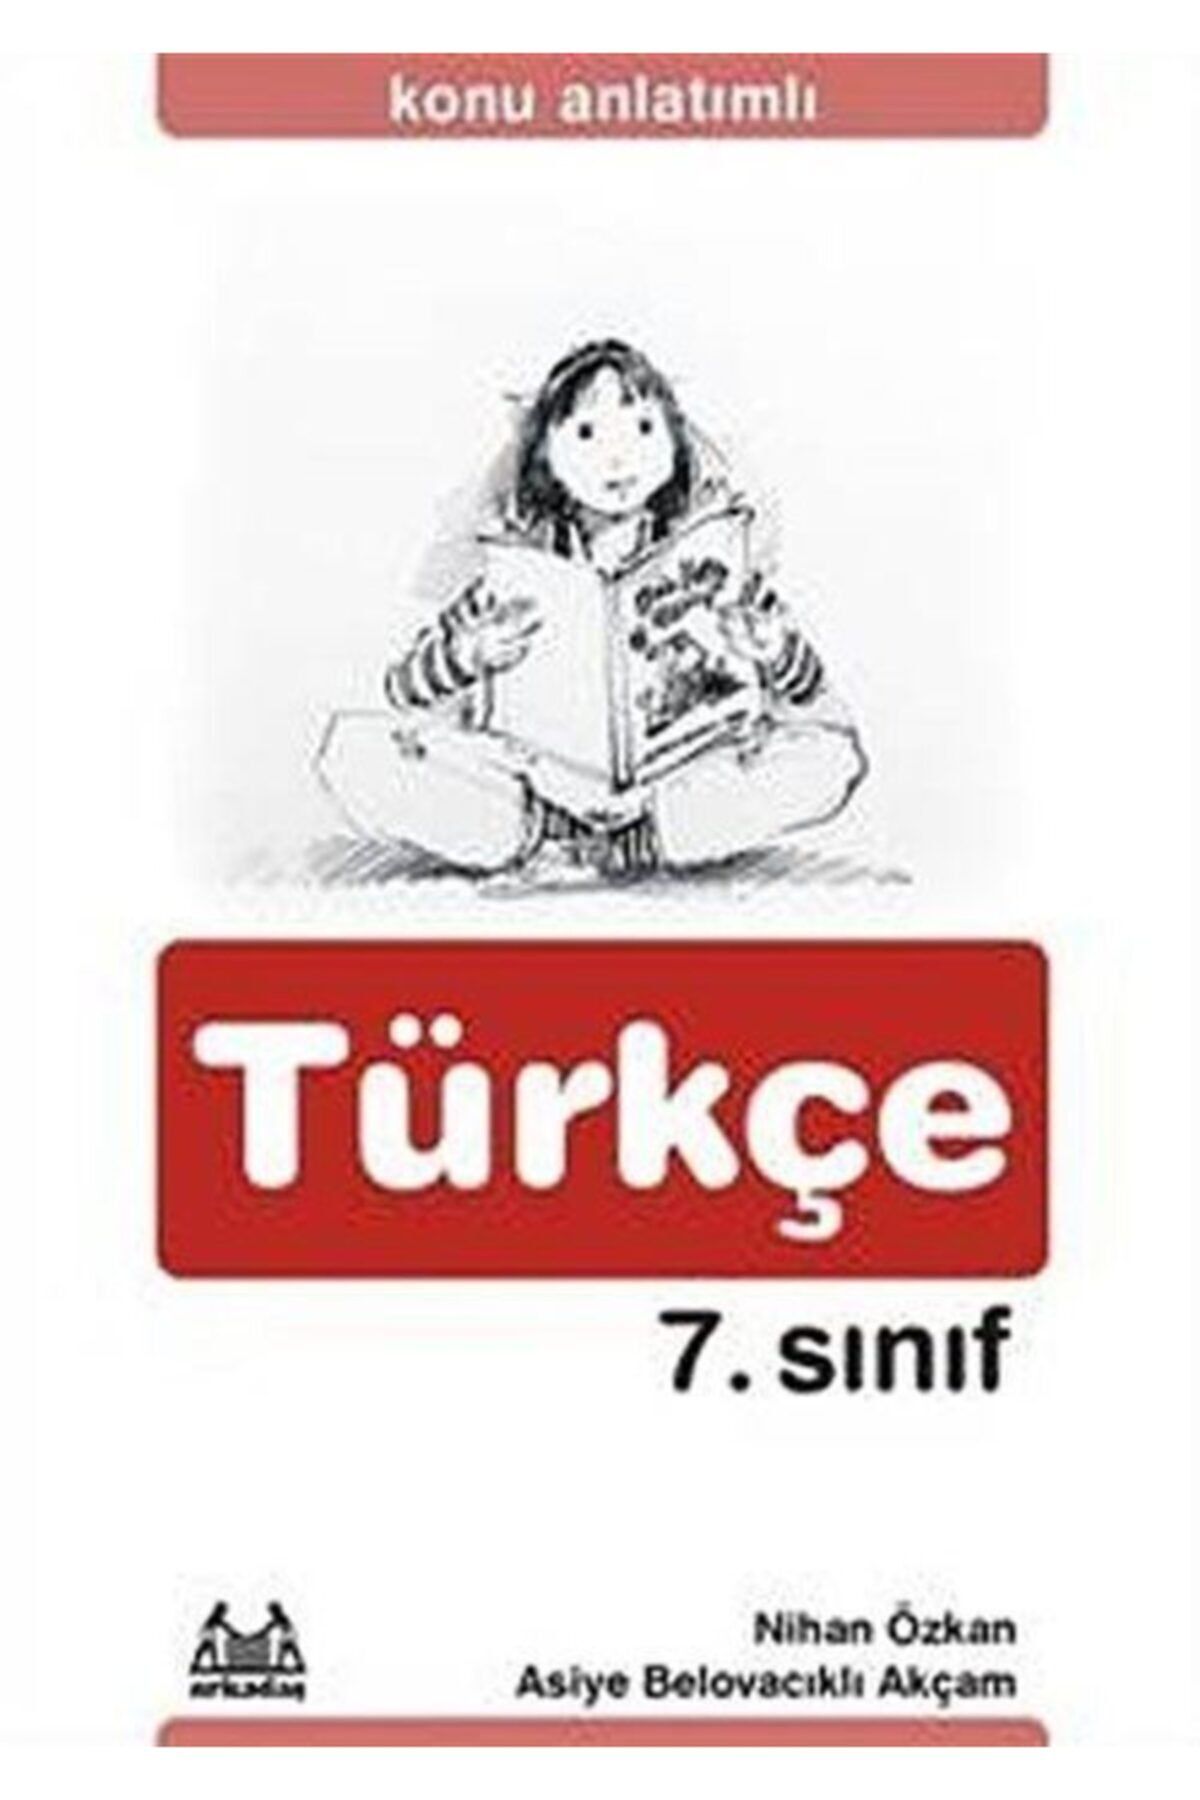 Arkadaş Yayıncılık 7. Sınıf Türkçe Konu Anlatımlı Yardımcı Ders Kitabı